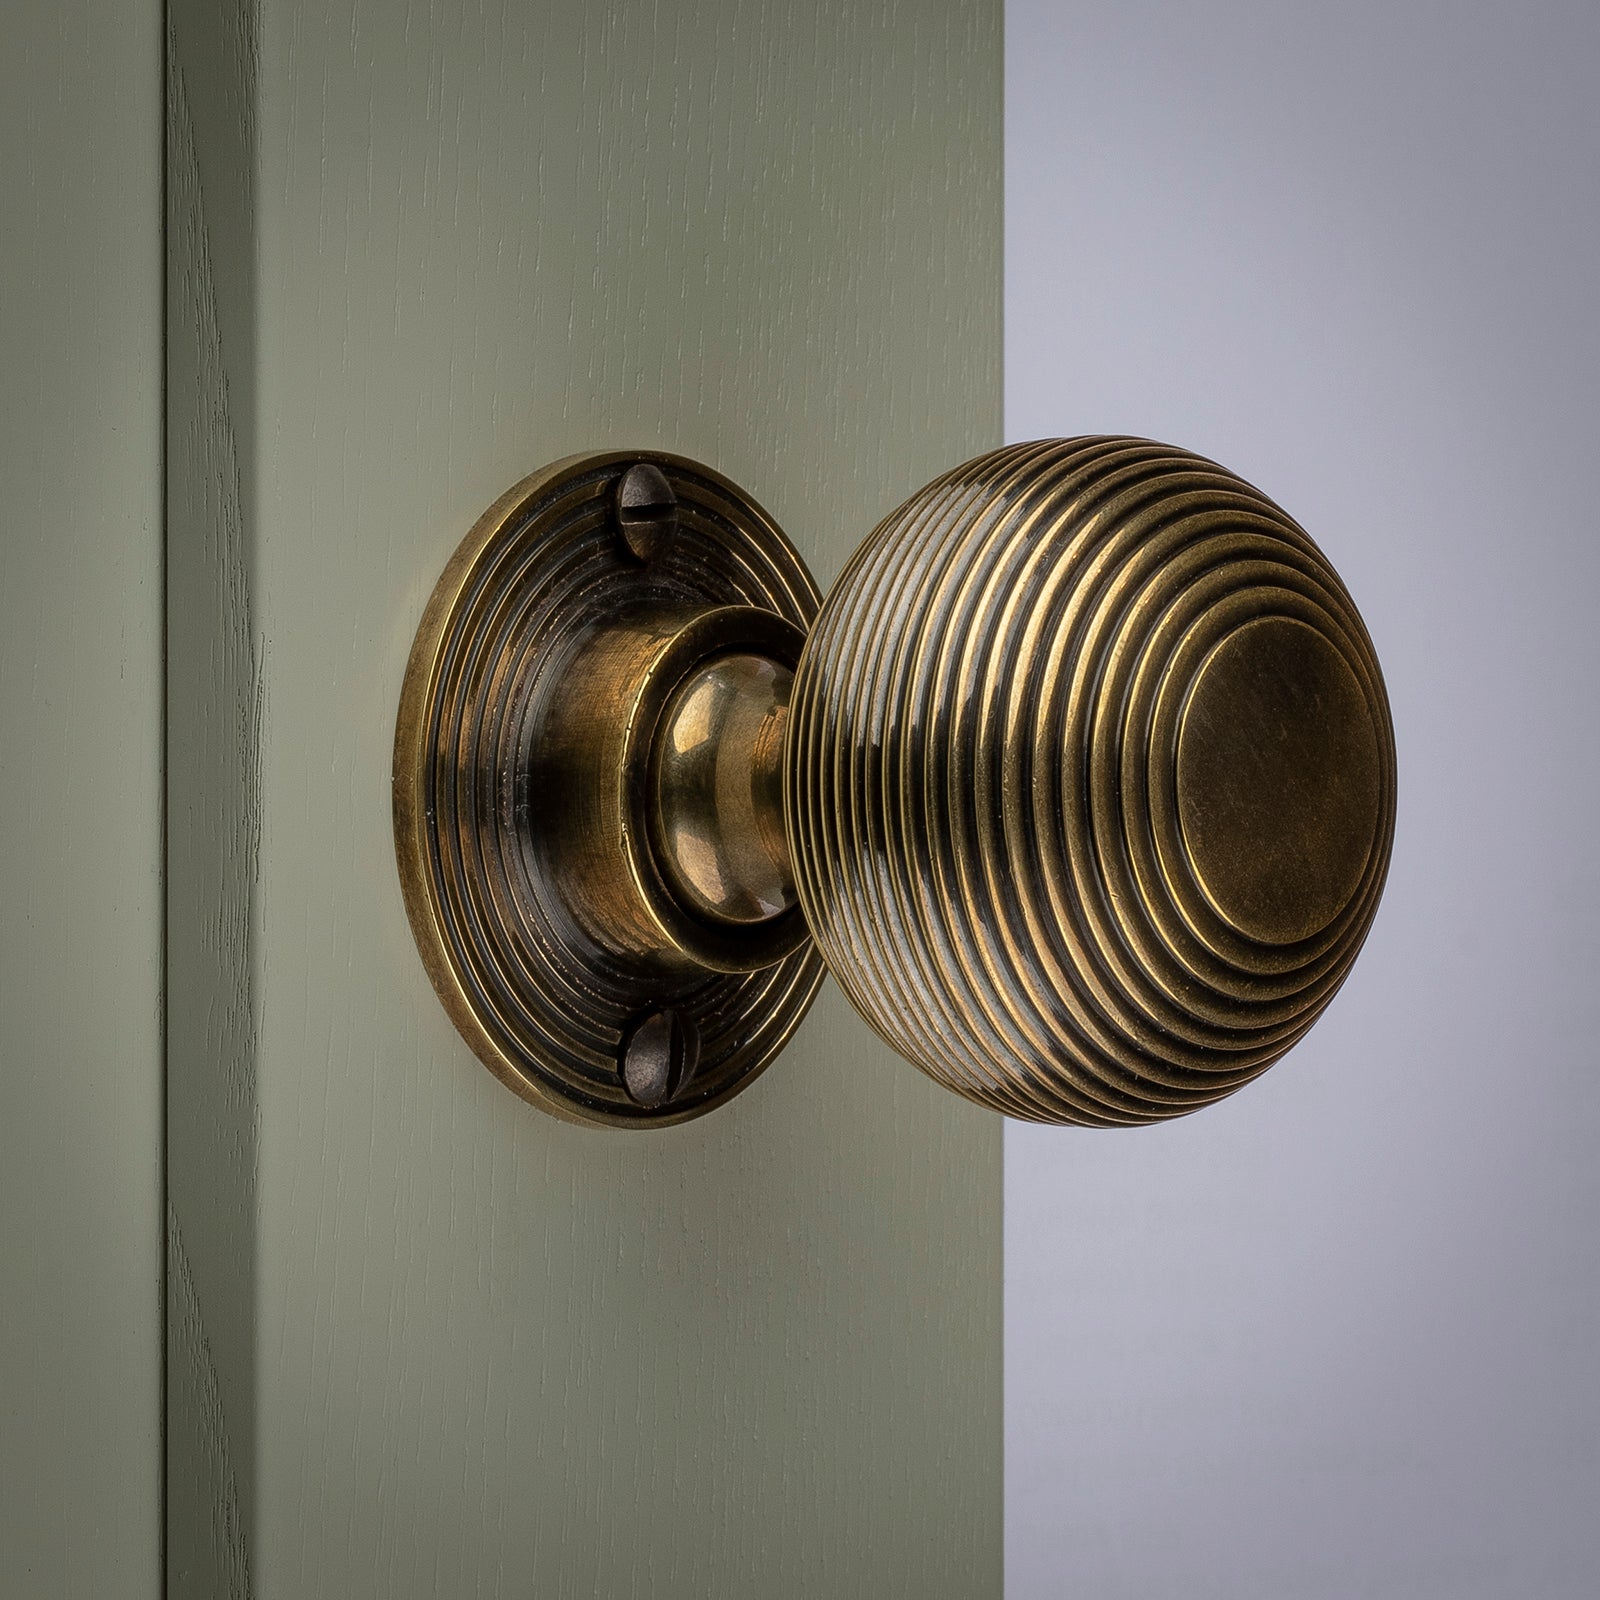 Antique brass beehive door knob SHOW